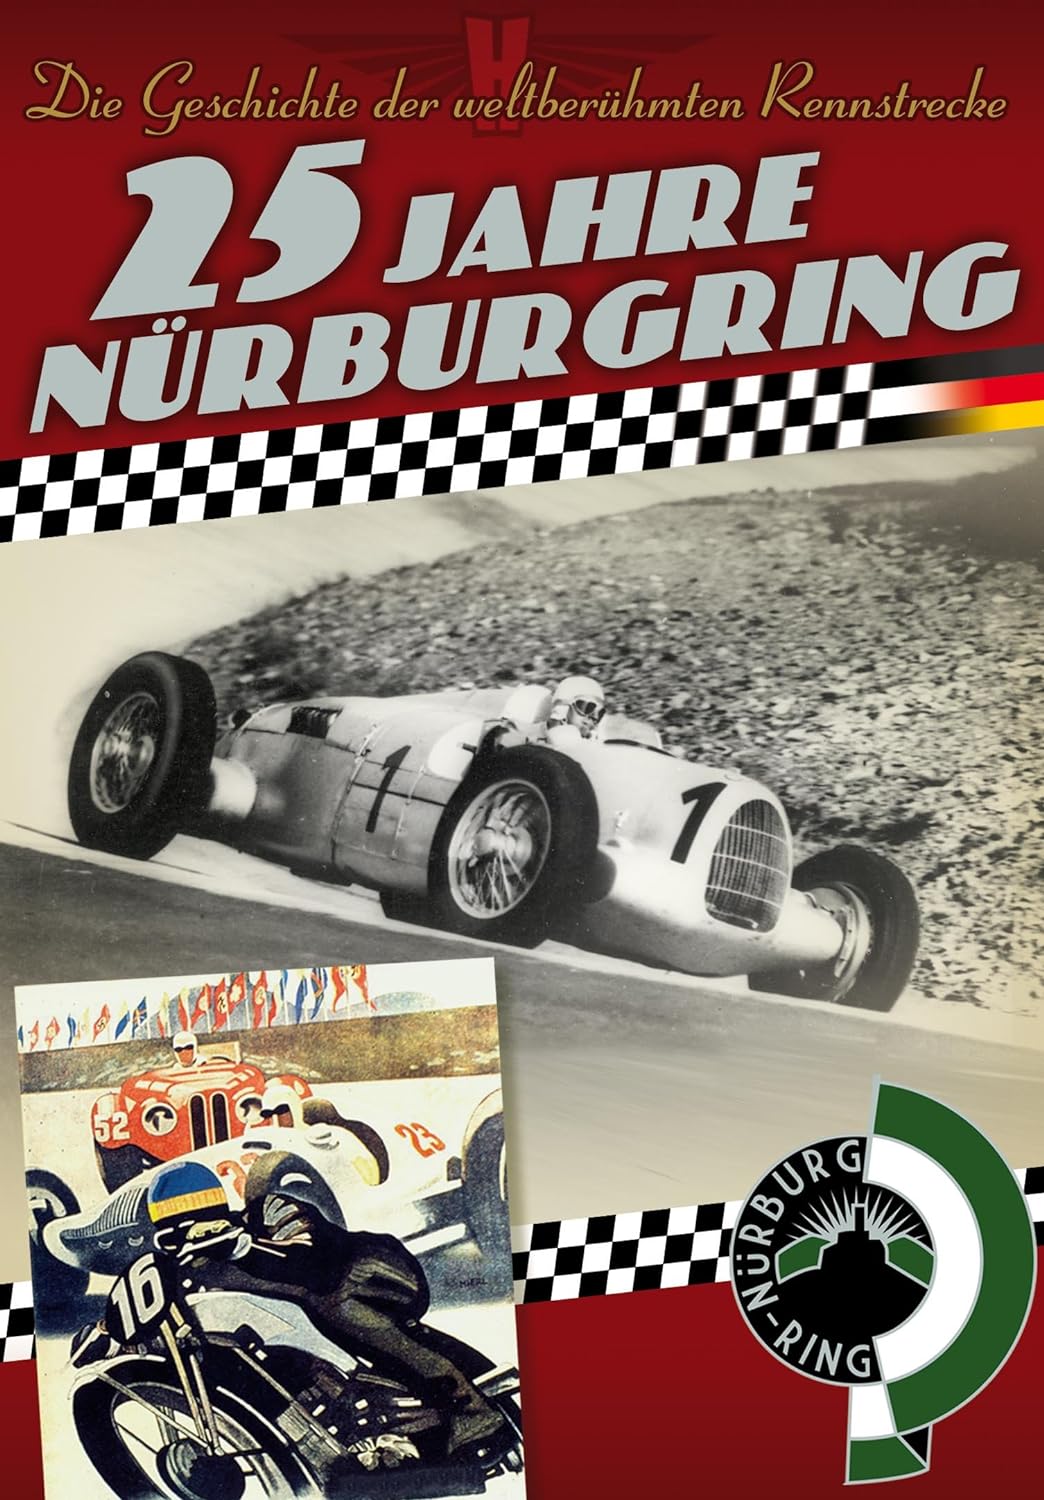 Motorsport - Le Mans25 Jahre Nürburgring